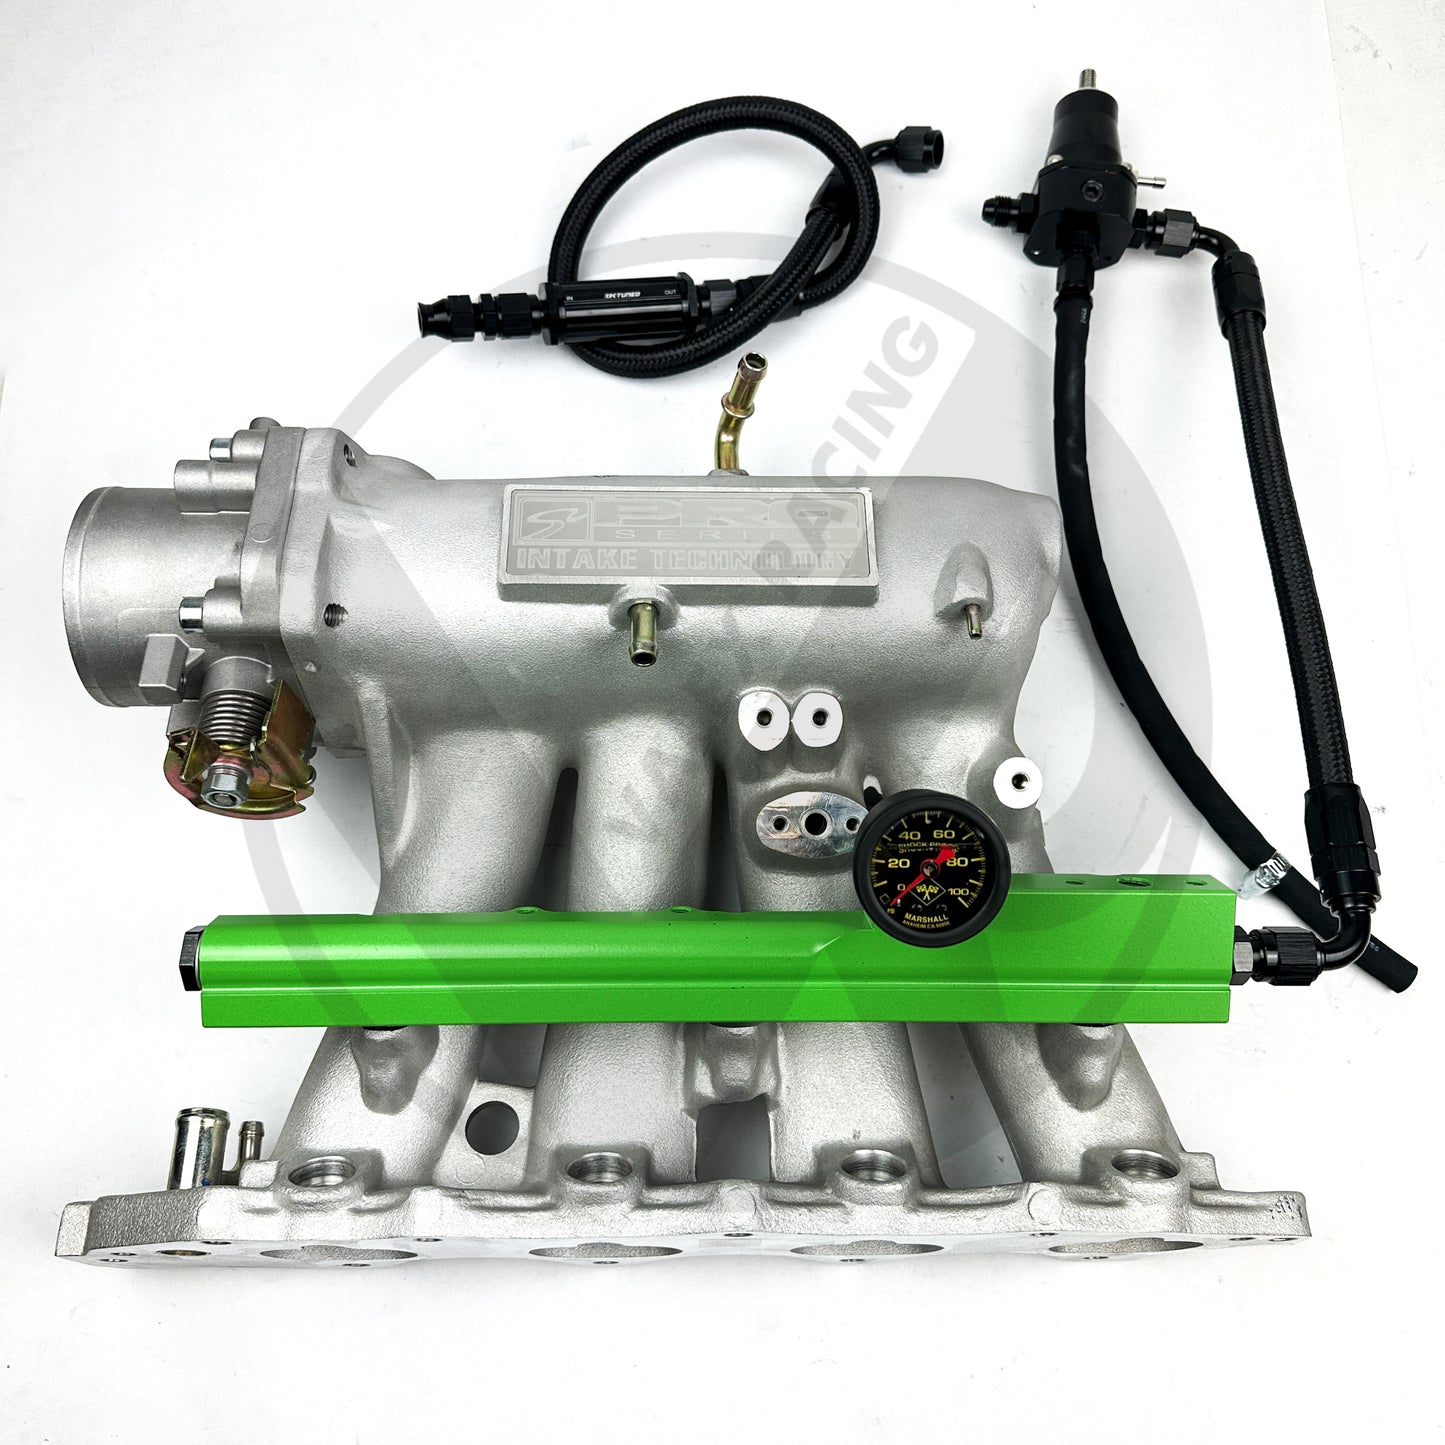 B Series Fuel Tuck System / Valex Racing Fuel Rail / K Tuned Filter for Honda Civic Acura Integra (FBO Green)